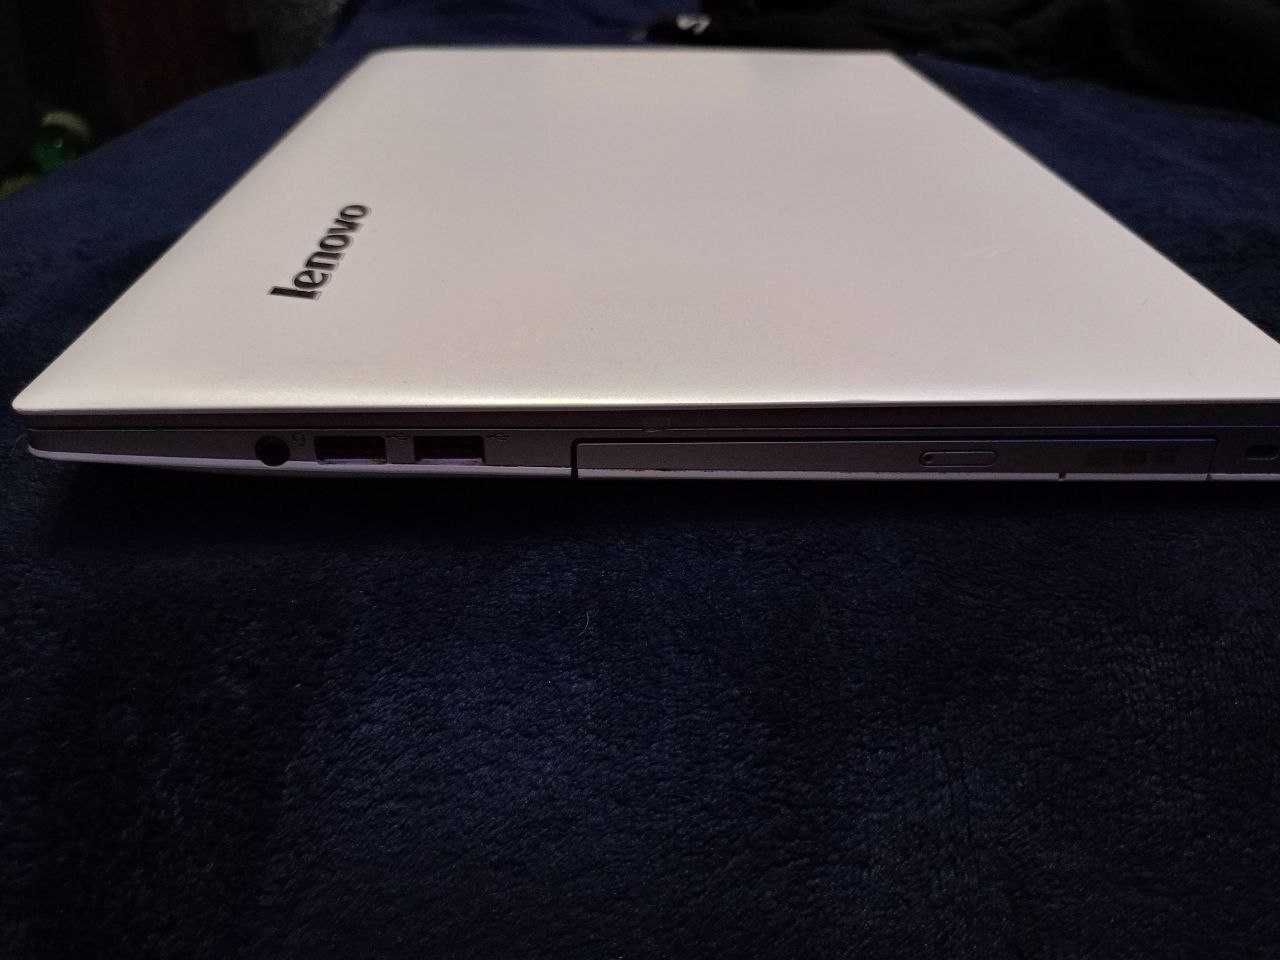 Продам Ноутбук Lenovo